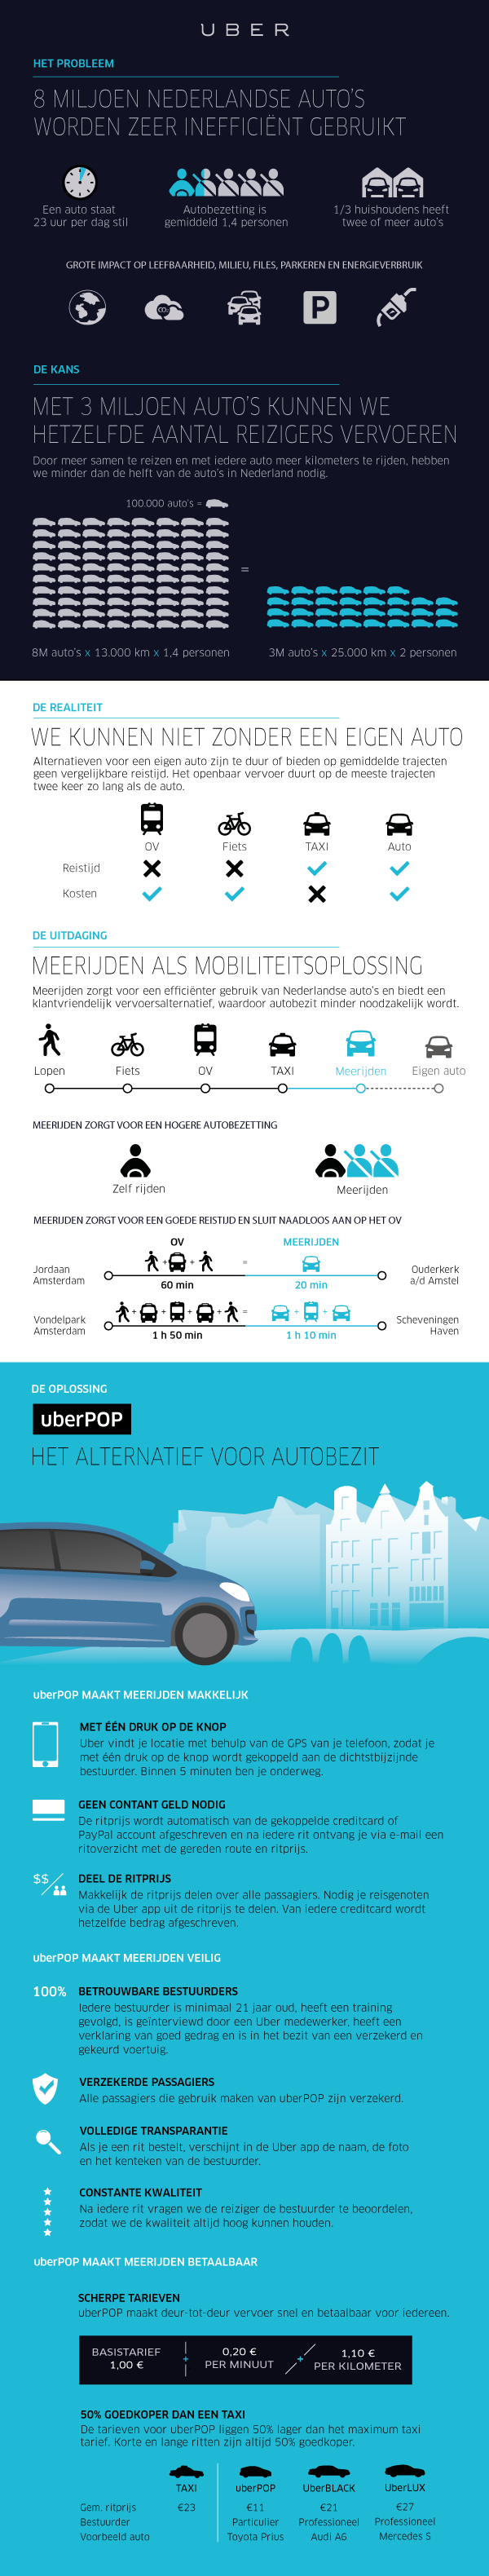 uberPOP-infographic